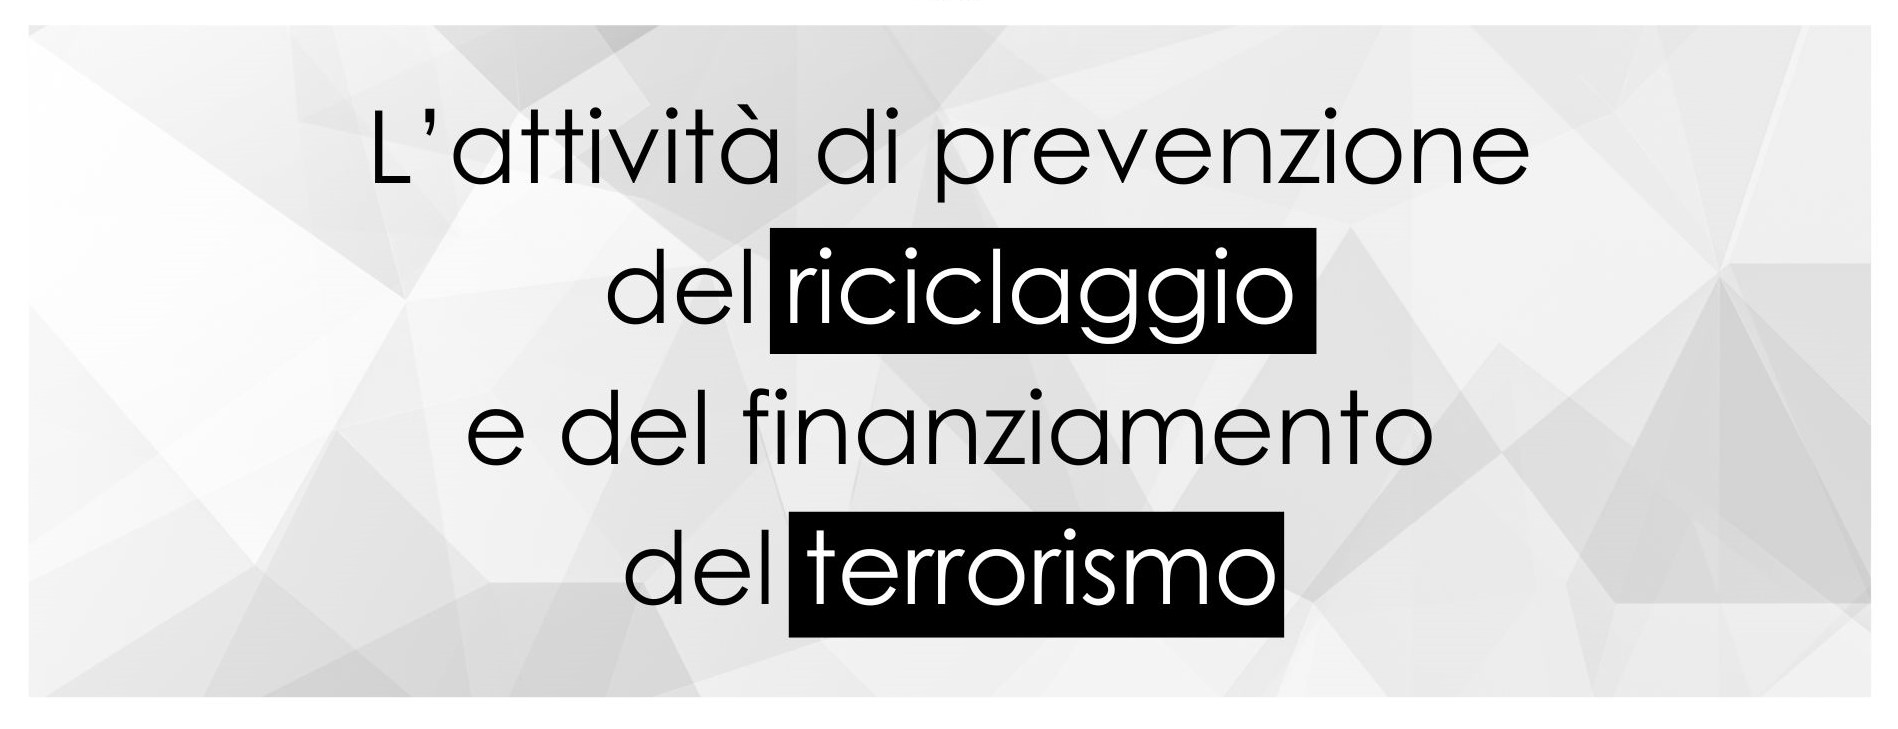 Banner L’attività di prevenzione del riciclaggio e del finanziamento del terrorismo v5